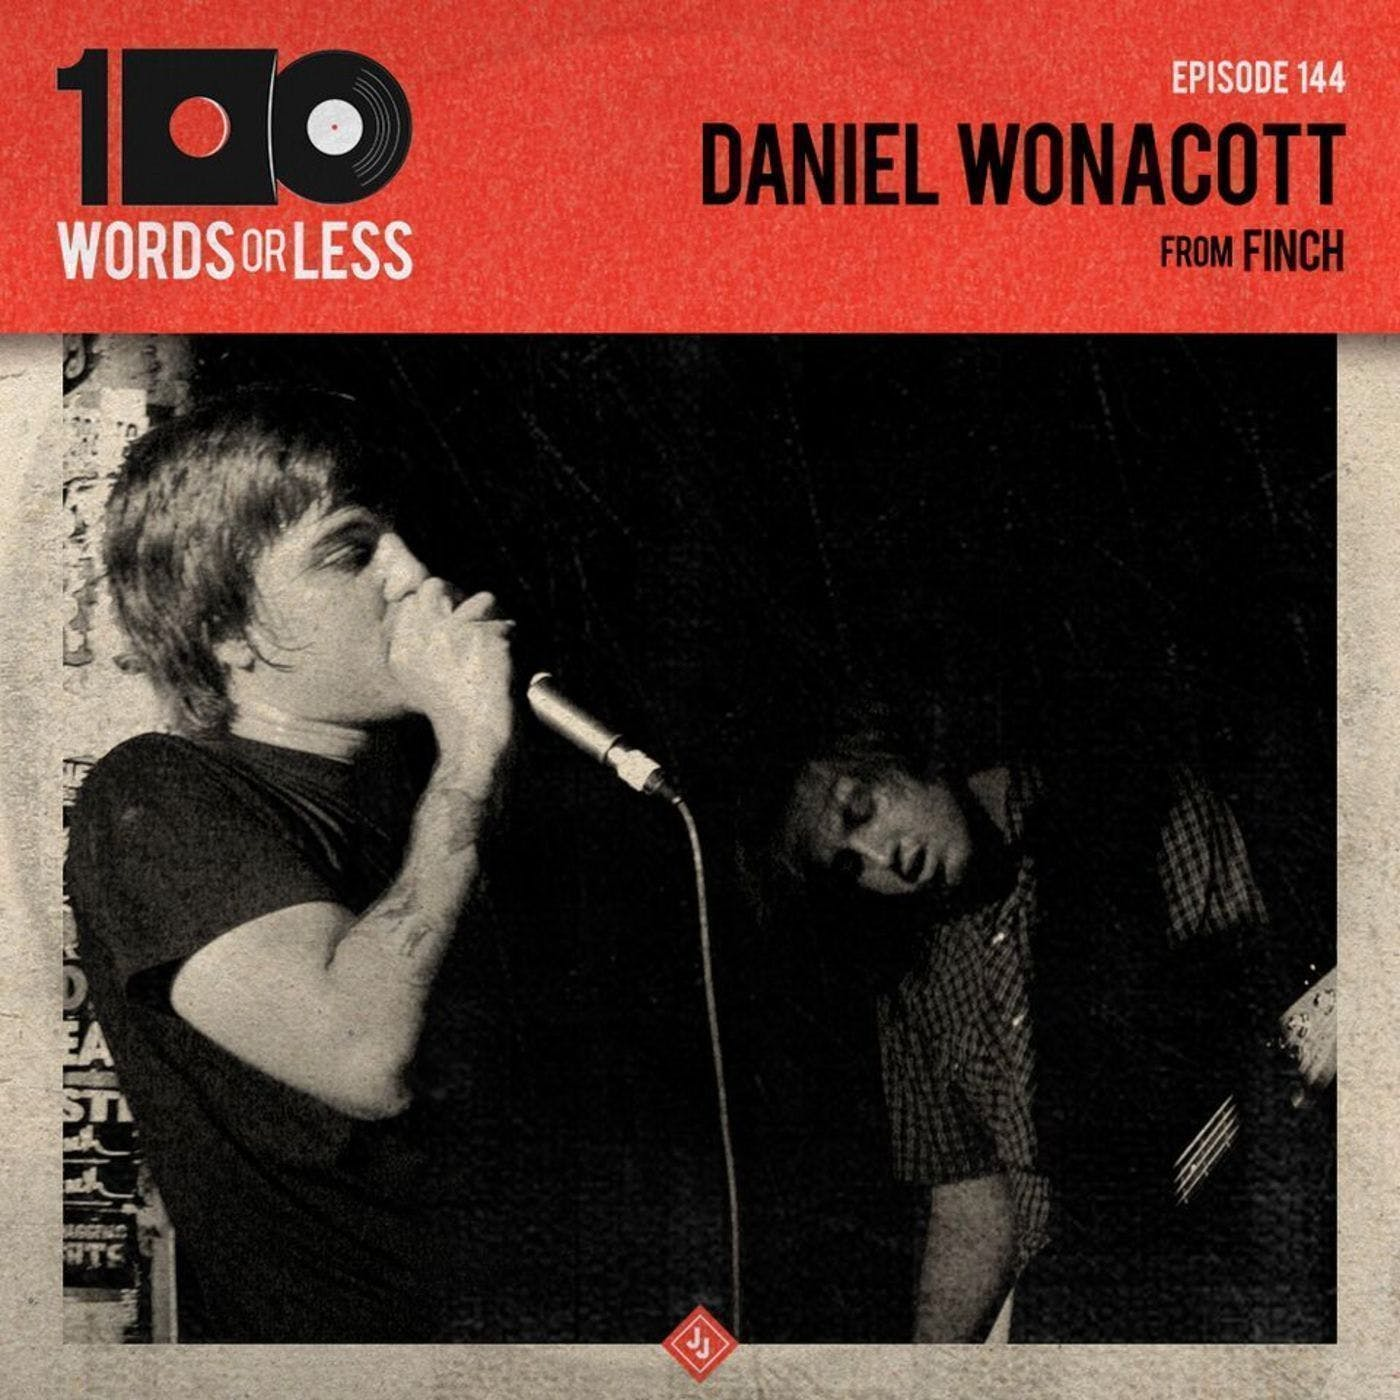 Daniel Wonacott from Finch